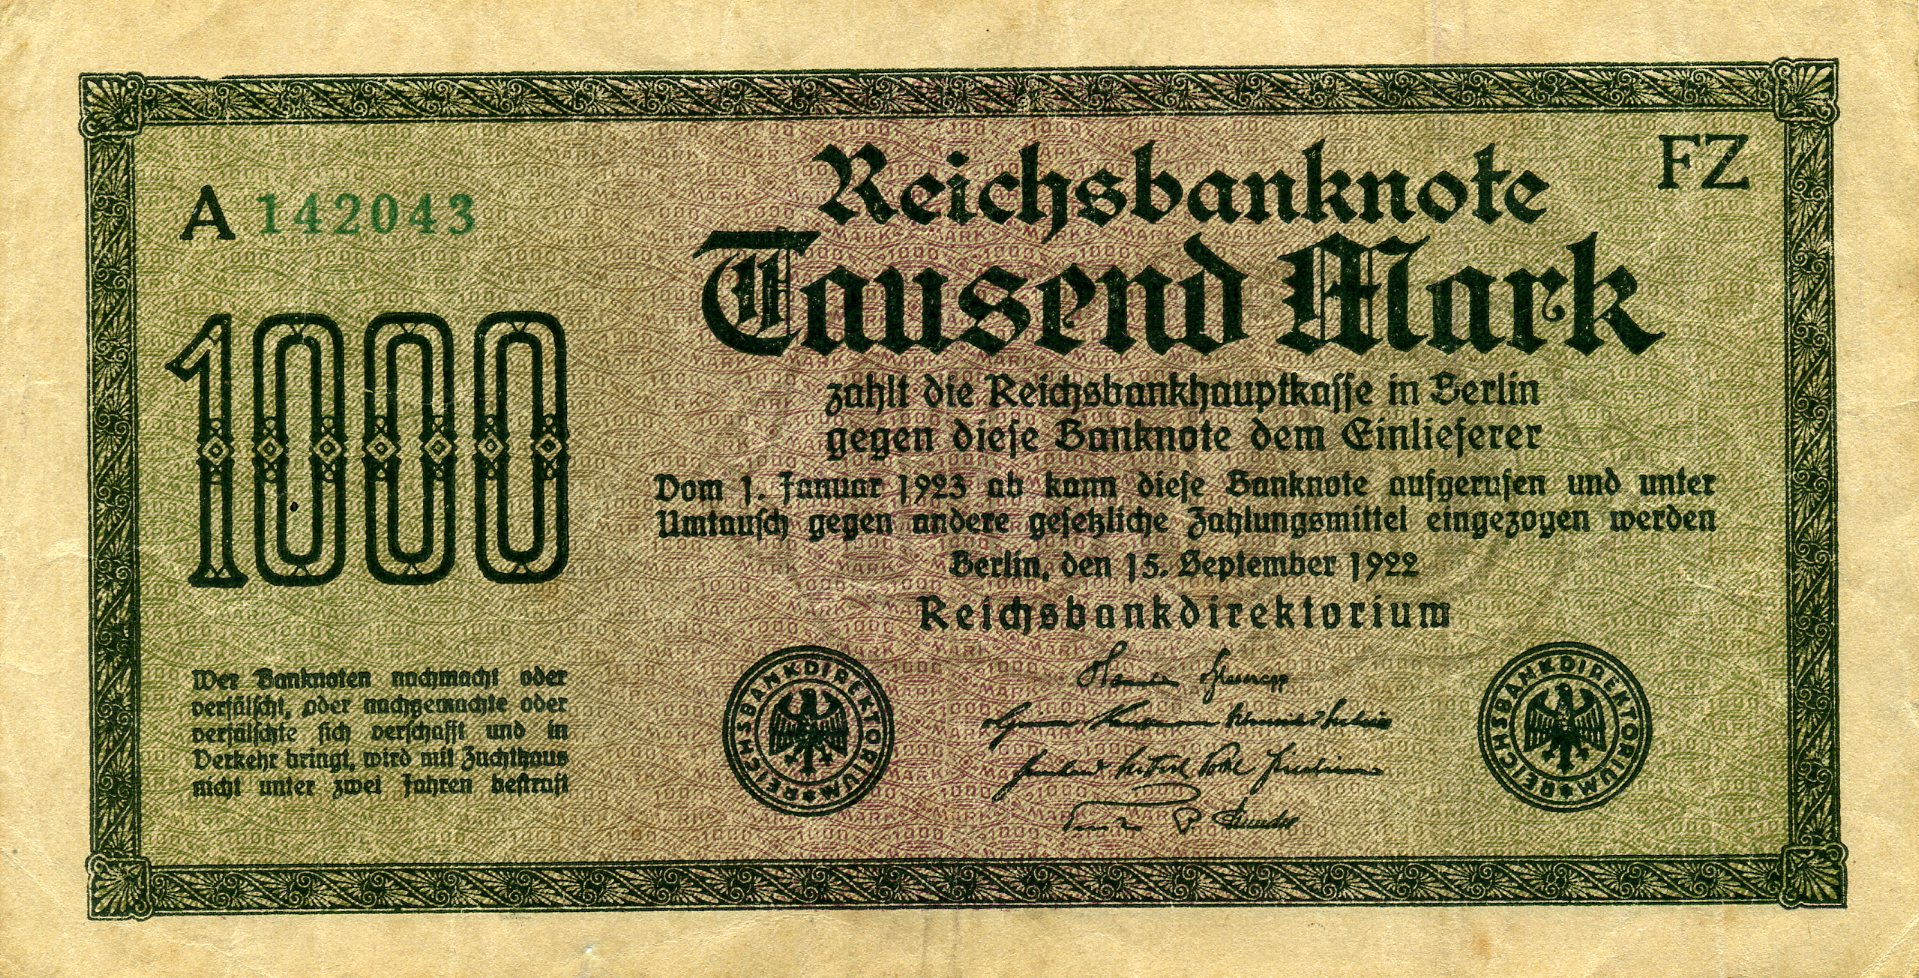 1000 марок 15 сентября 1922 года. Аверс. Реферат Рефератович.